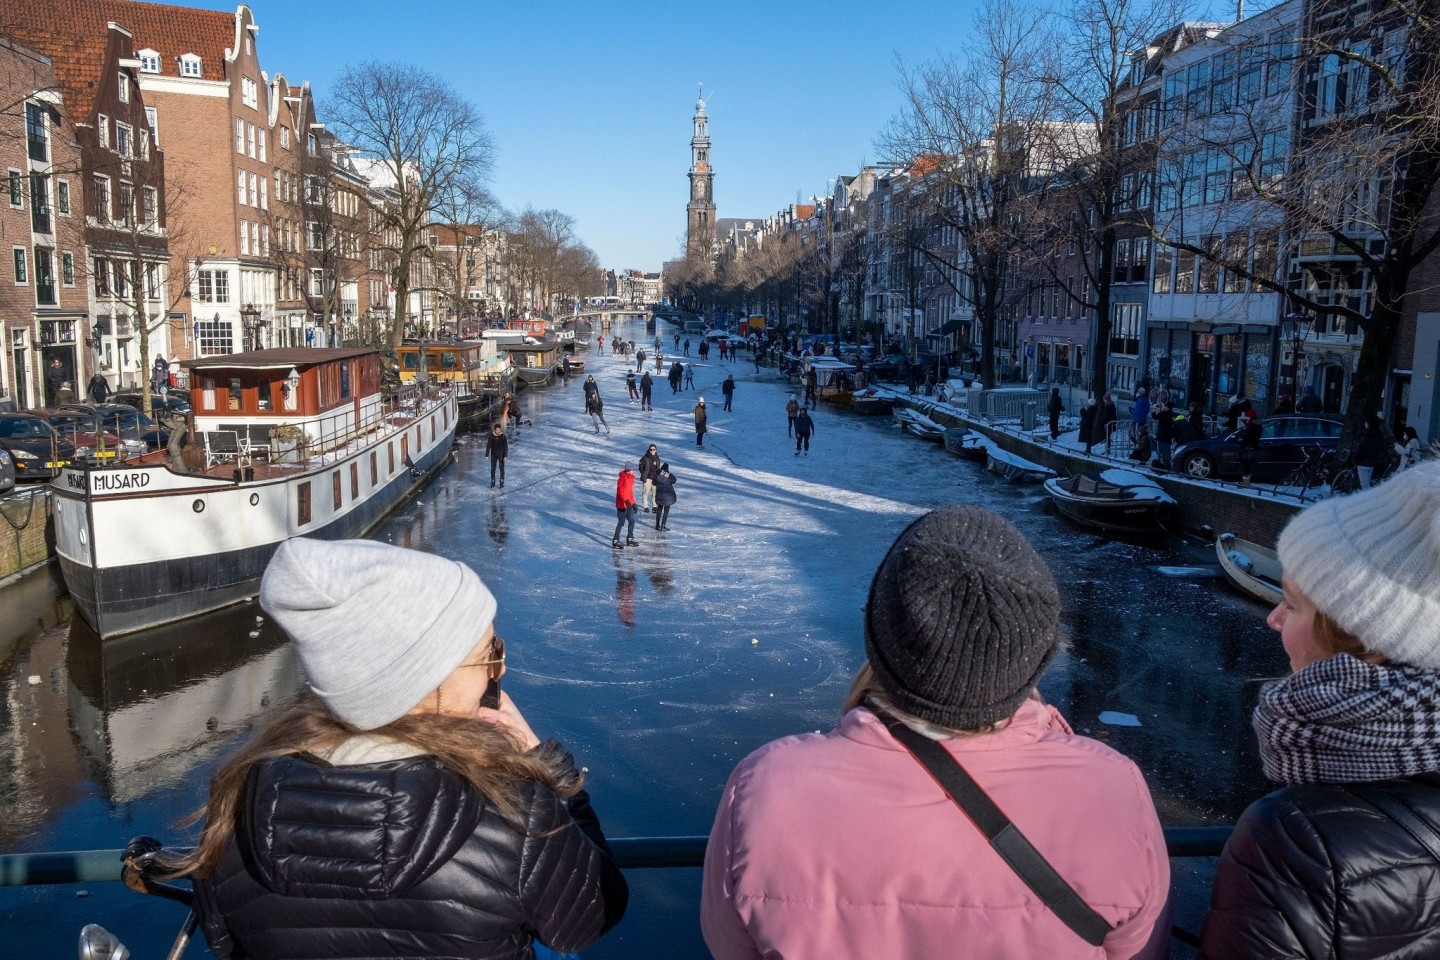 Dutzende von Schlittschuhläufern laufen auf der gefrorenen Oberfläche von Amsterdams historischem Prinsengracht-Kanal.